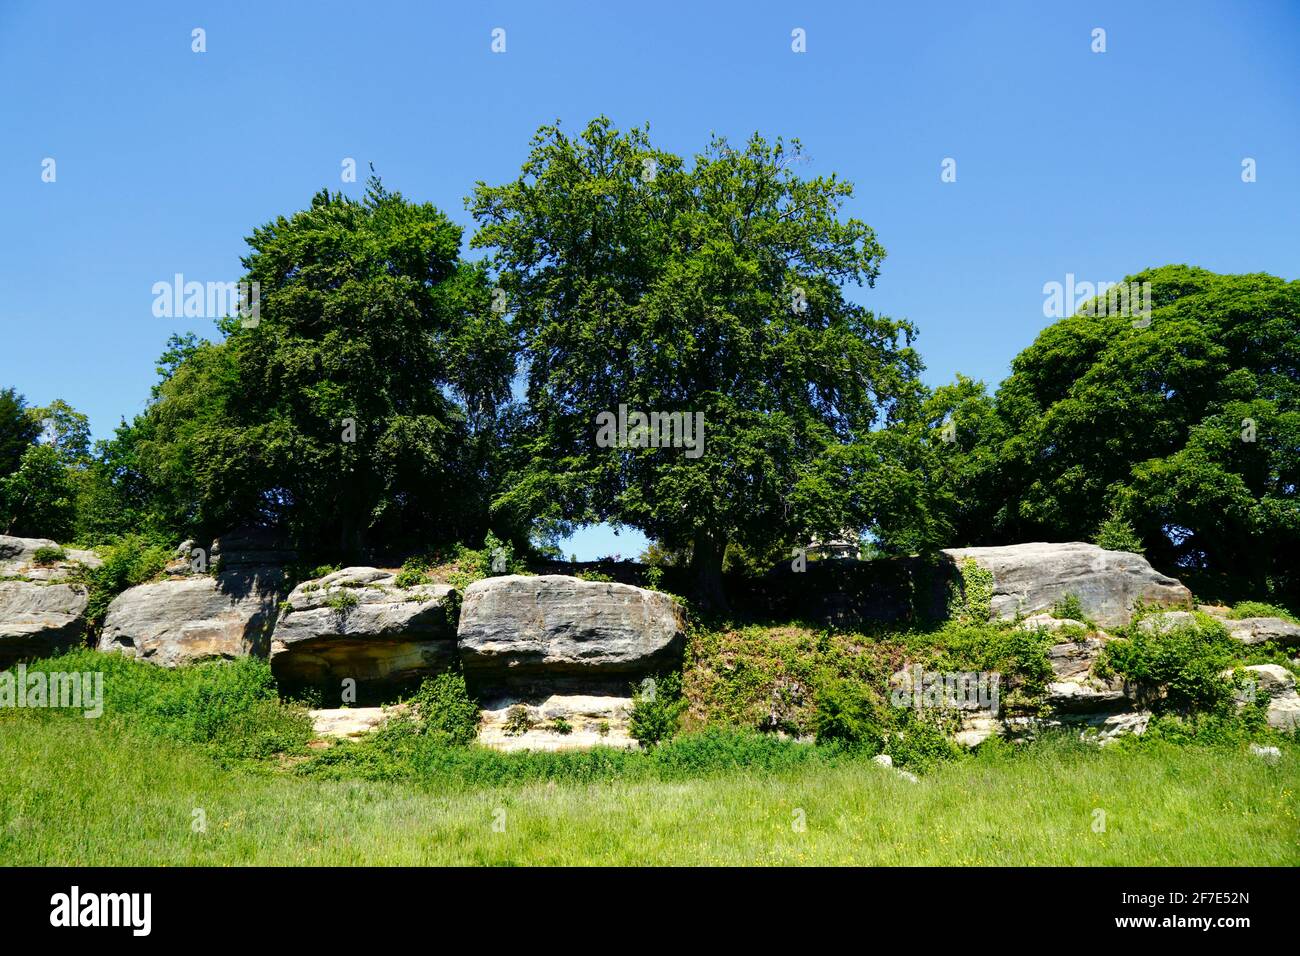 Mount Edgcumbe Rocks on Tunbridge Wells Common, Royal Tunbridge Wells, Kent, England Stock Photo